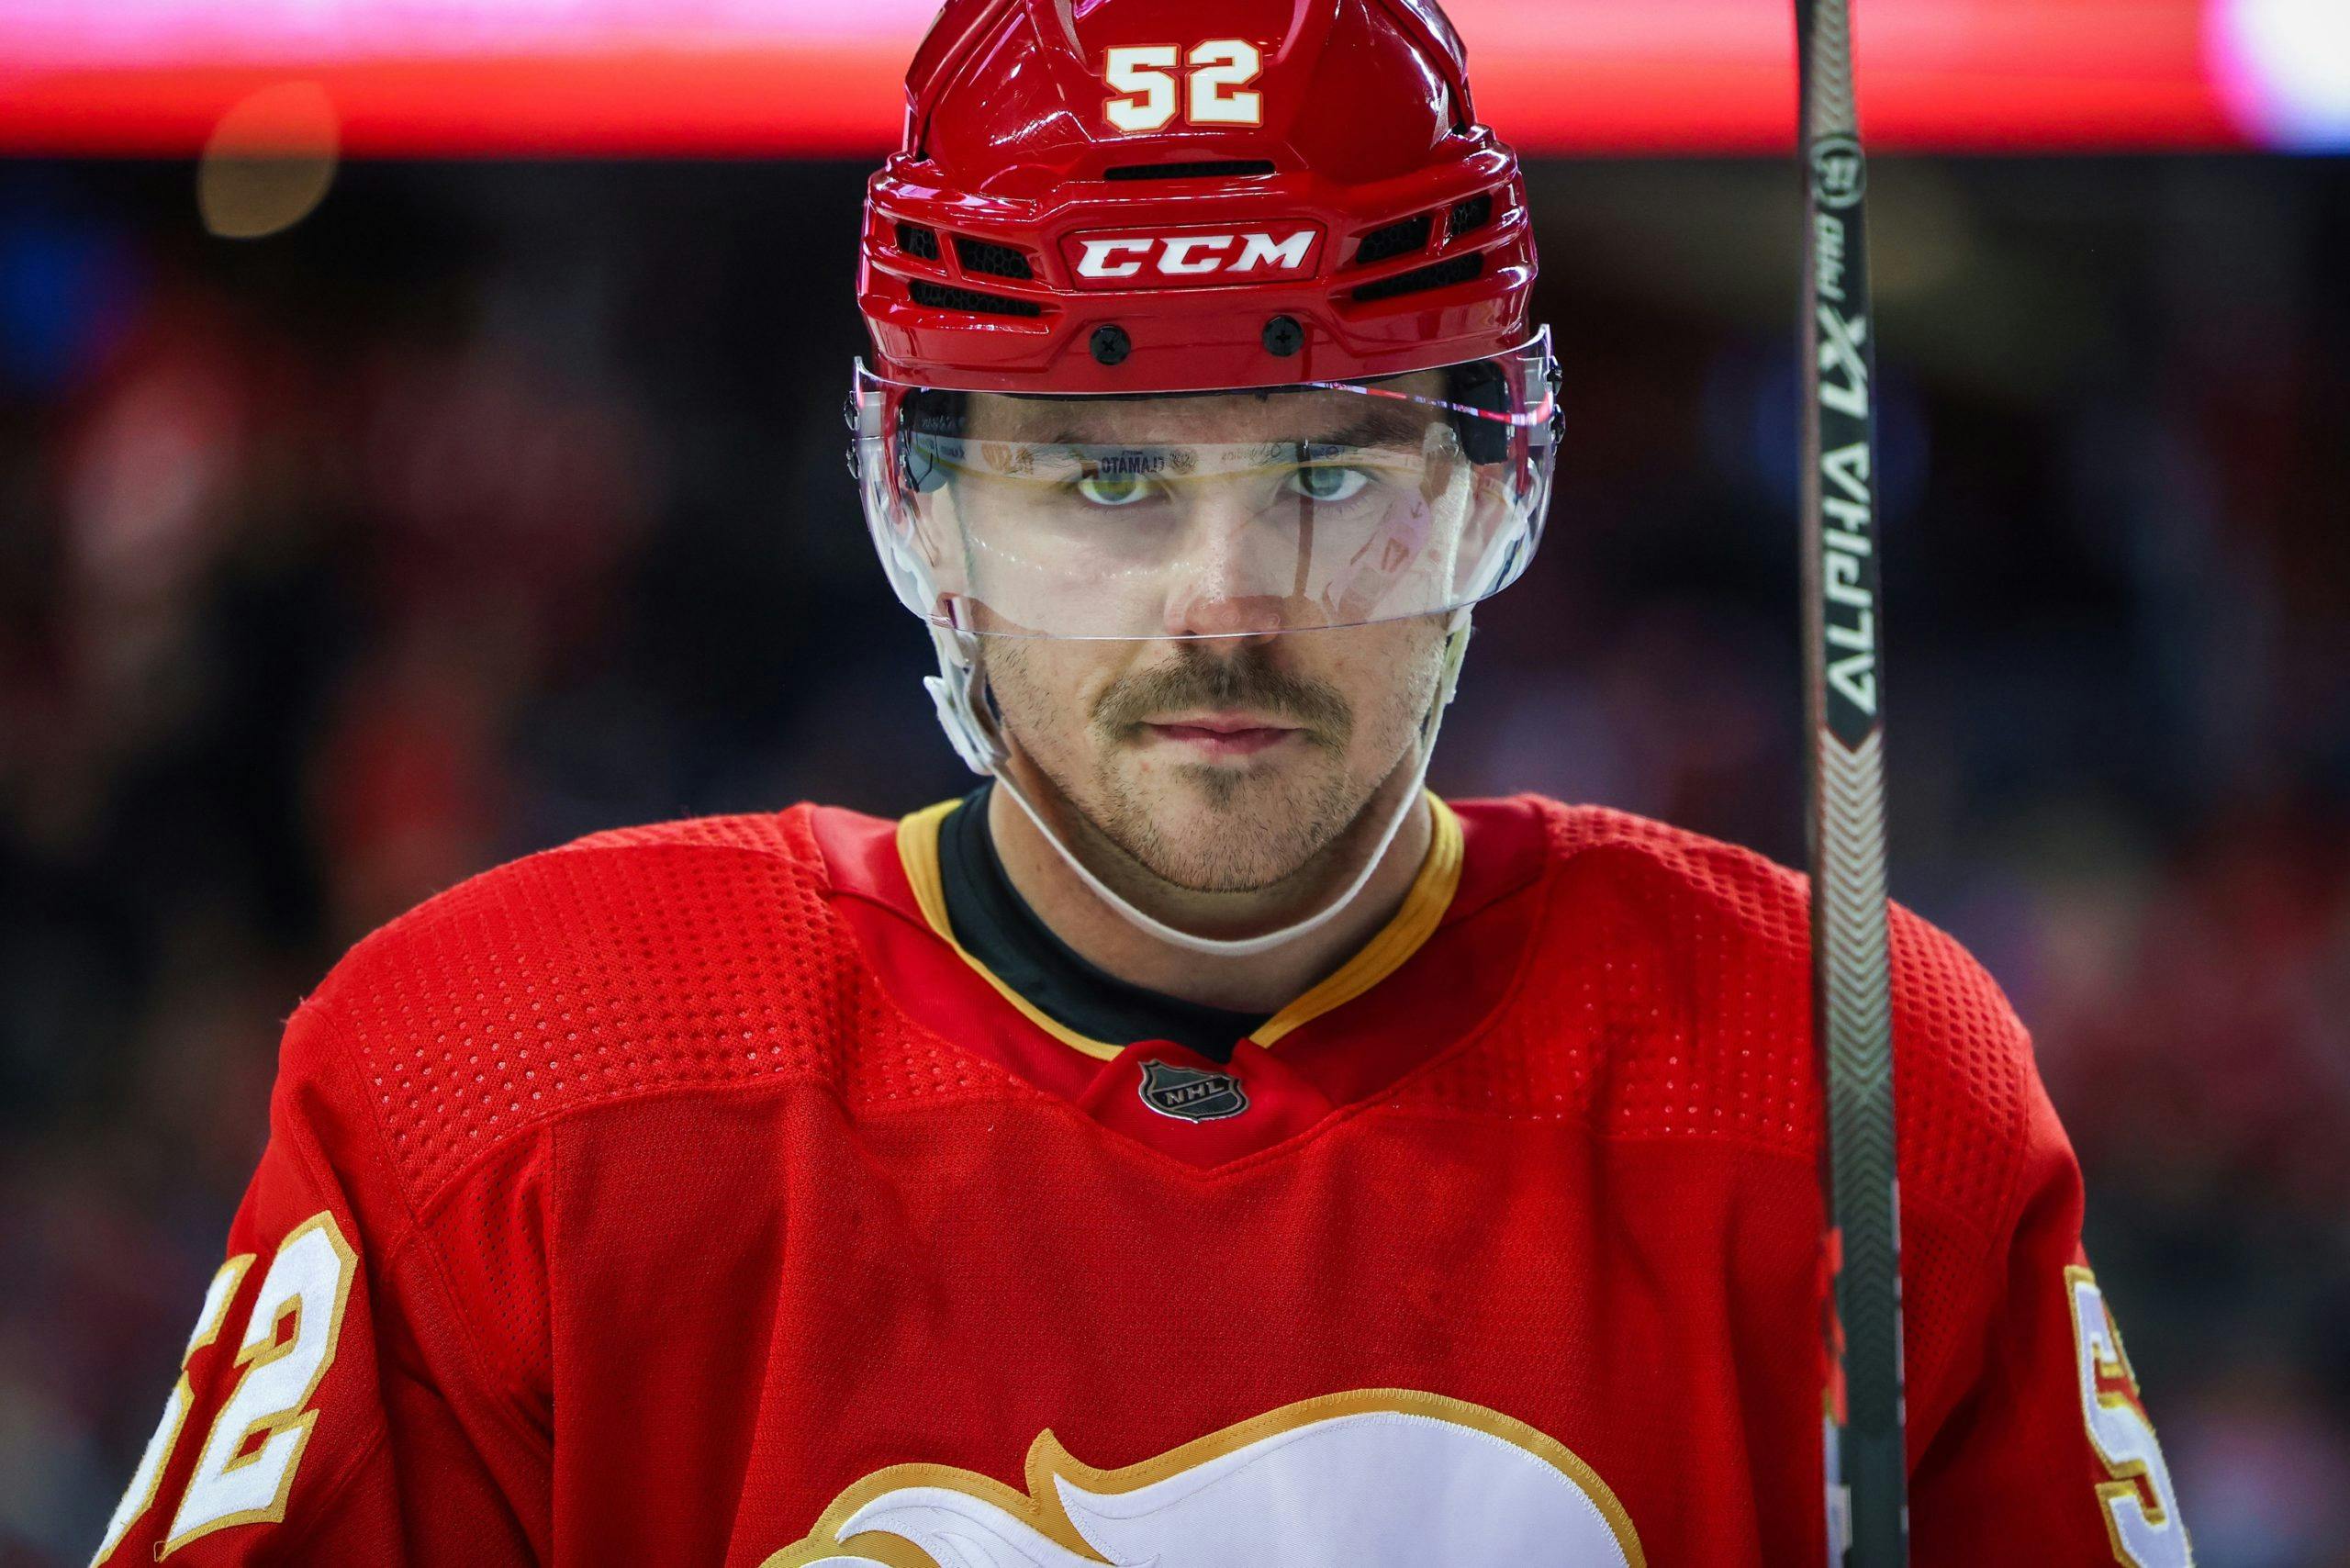 We're a better team': Flames' MacKenzie Weegar sounds off on